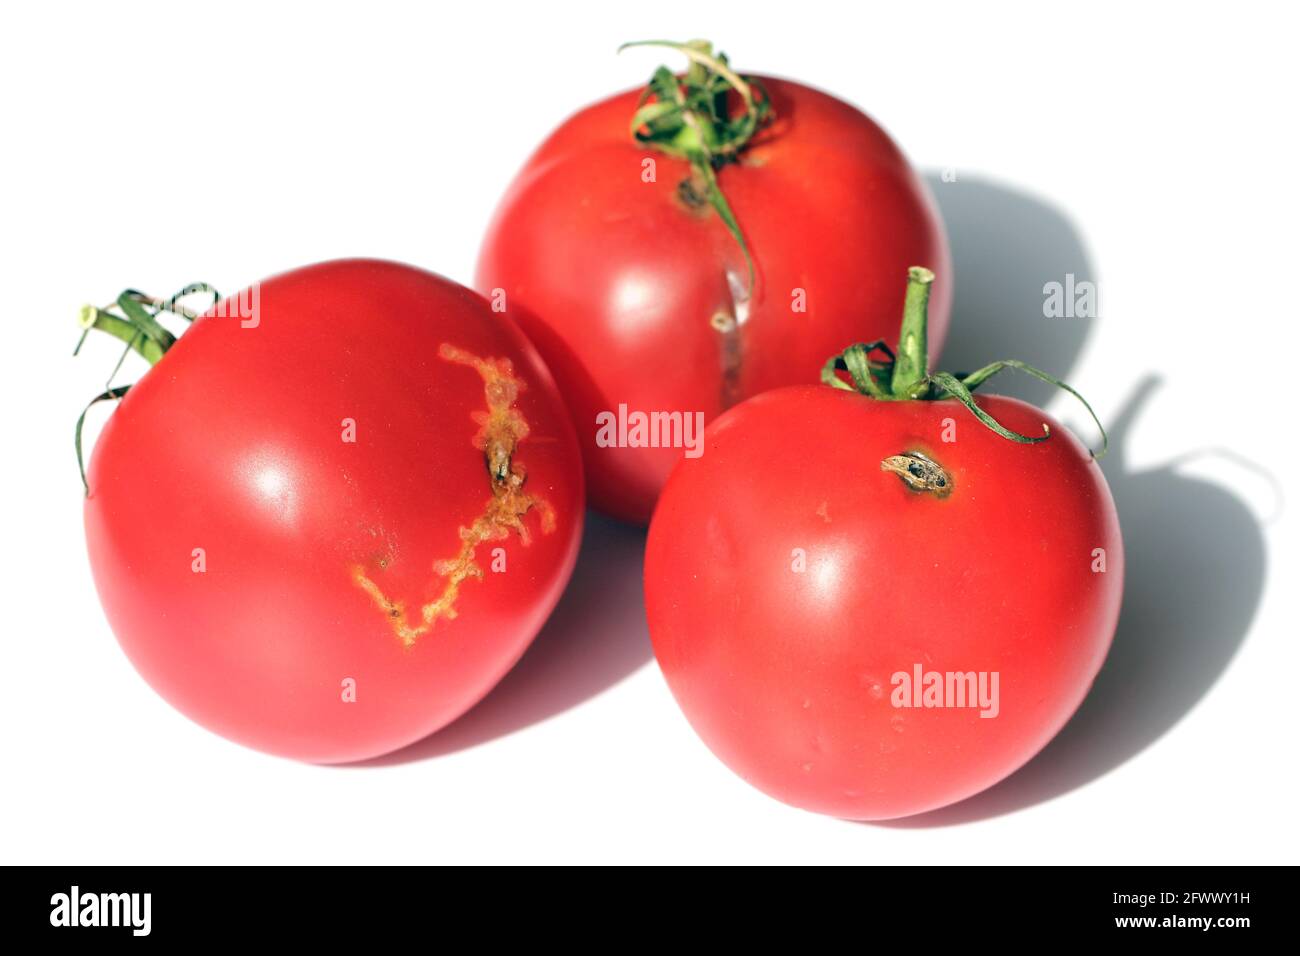 Pomodori danneggiati da caterpillars di pomodoro foglia chiamato anche pinworm di pomodoro o falce sudamericana di pomodoro - Tuta assoluta (nome latino). Foto Stock